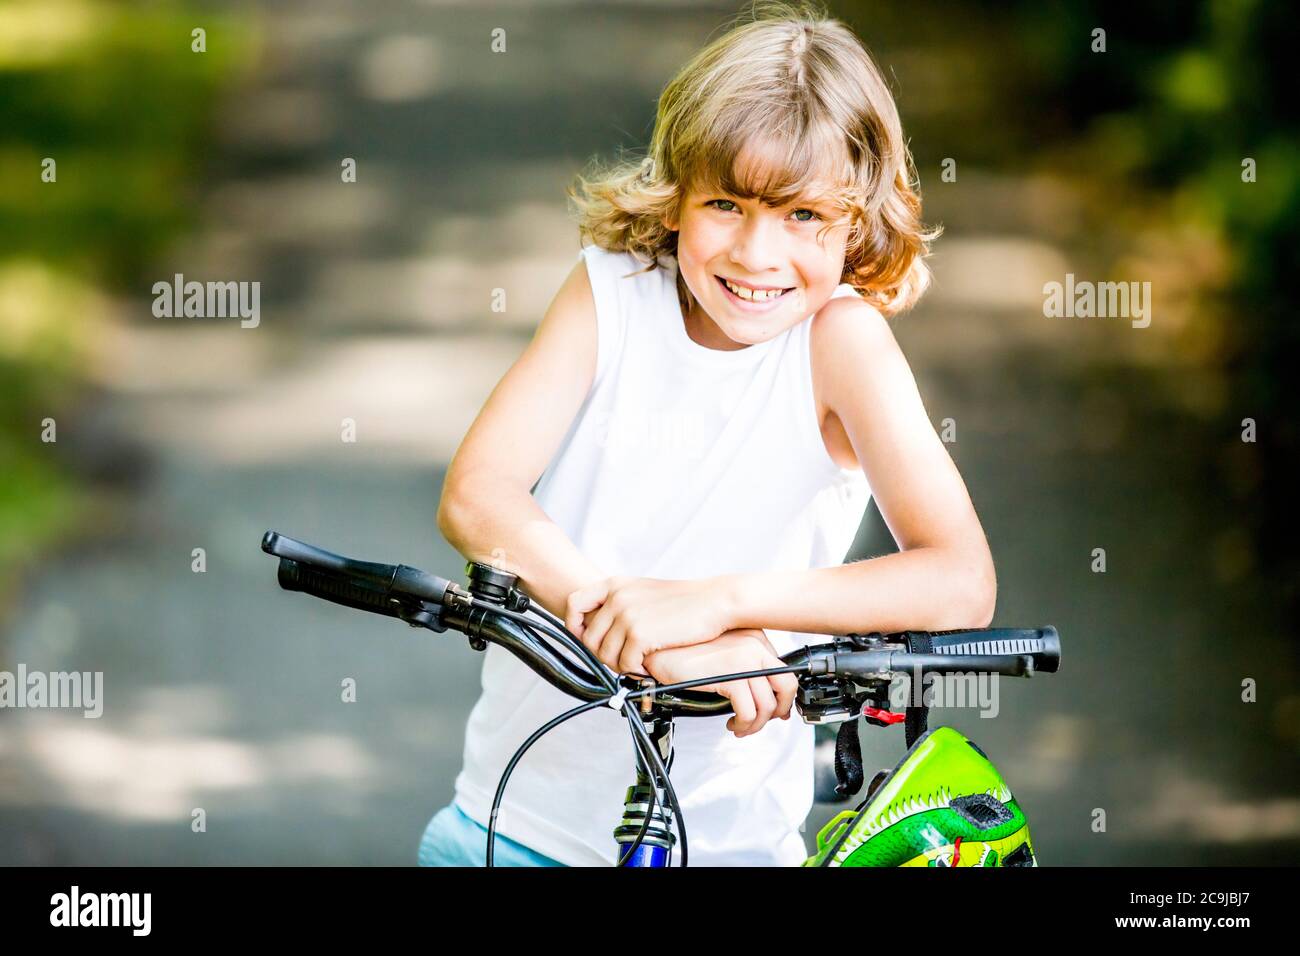 Niño sentado en bicicleta en el parque, sonriendo, retrato. Foto de stock